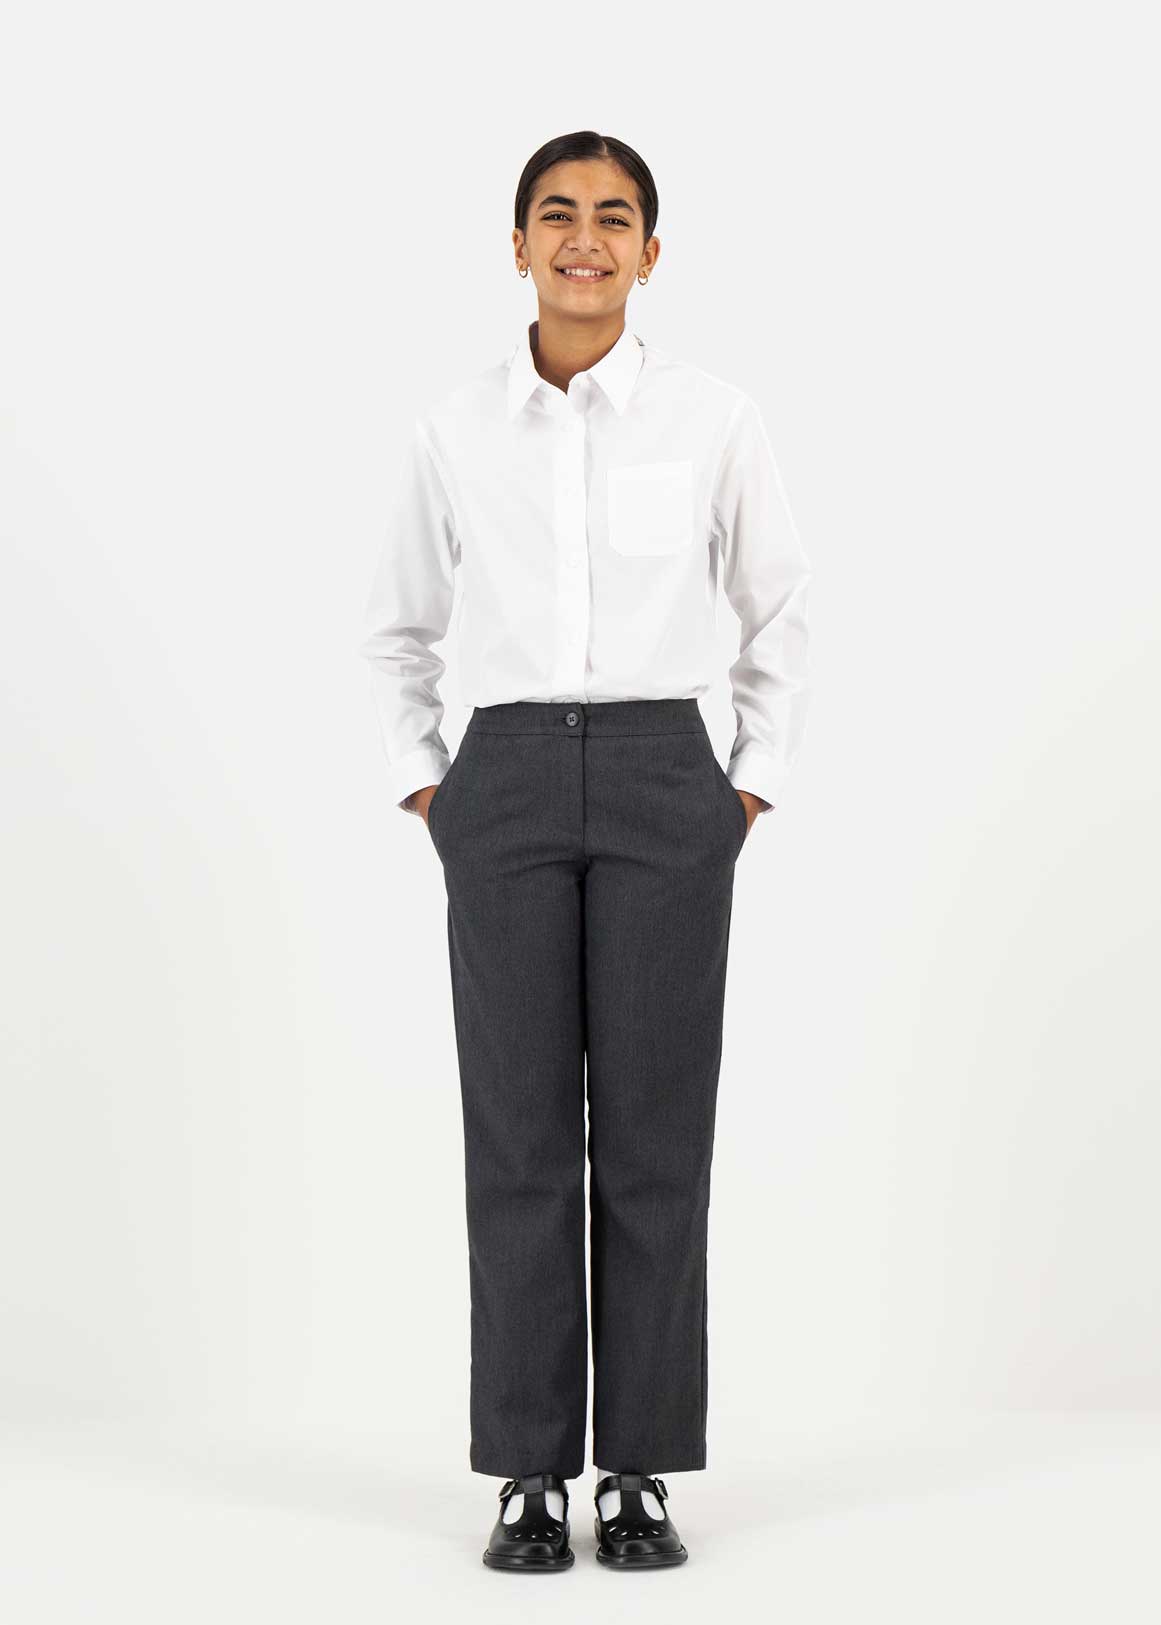 EX M&S Boys Slim Fit School Trousers Grey School Uniform Age 2 3 4 5 6 7 8  9 10 | eBay